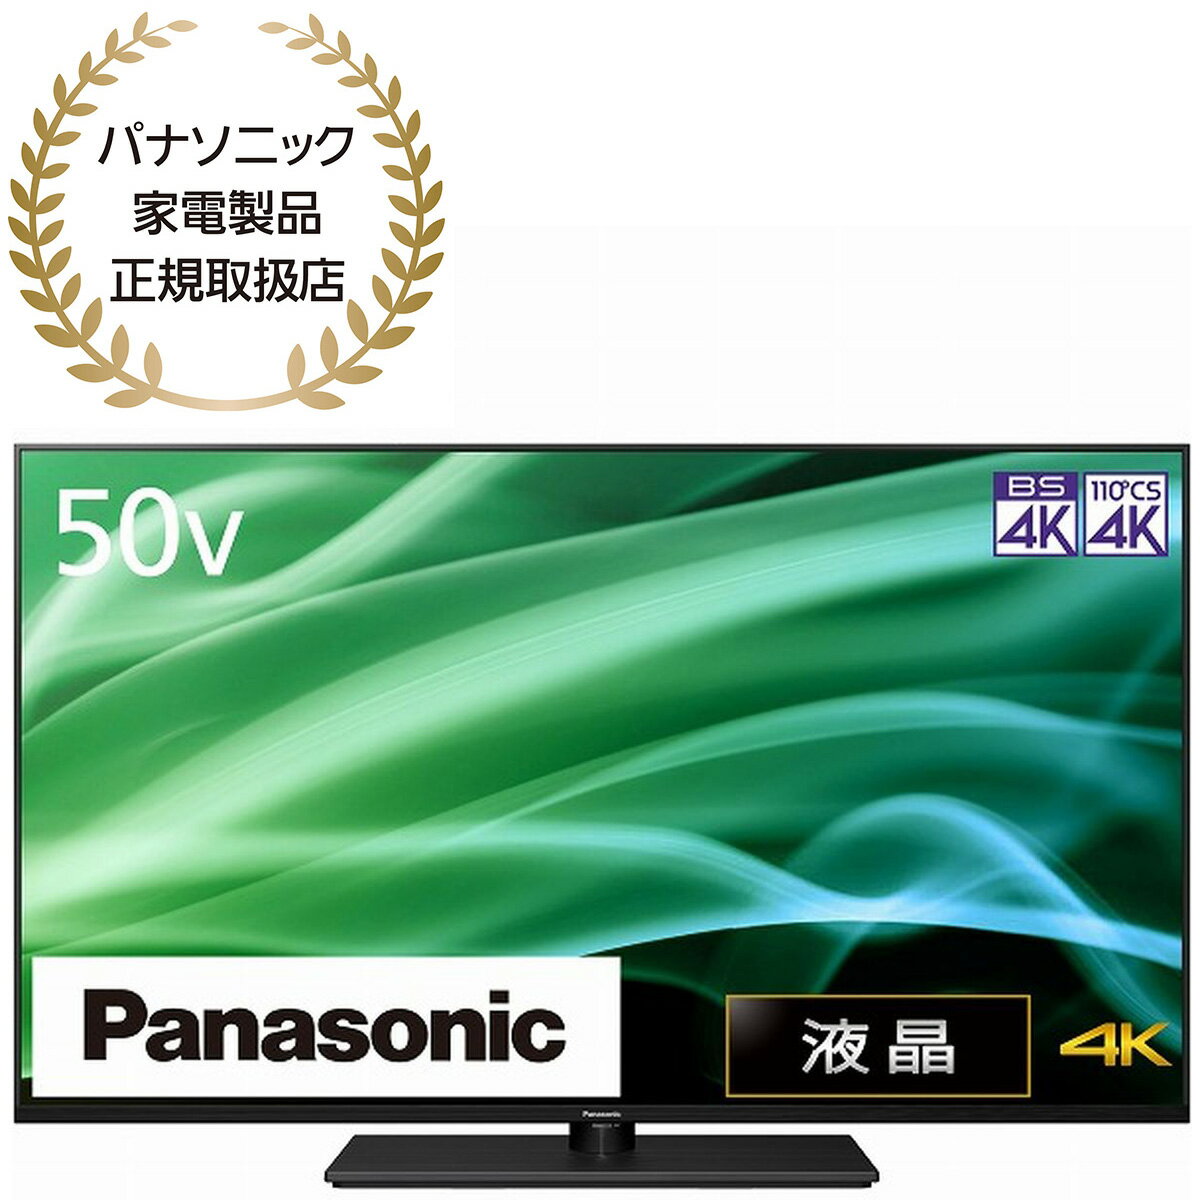 Panasonic VIERAirGj50V^ter MX900 HDR/lbg/HDMI2.1/OtHDD^/]|h~X^hyẑ ݒuȂ nz TH-50MX900